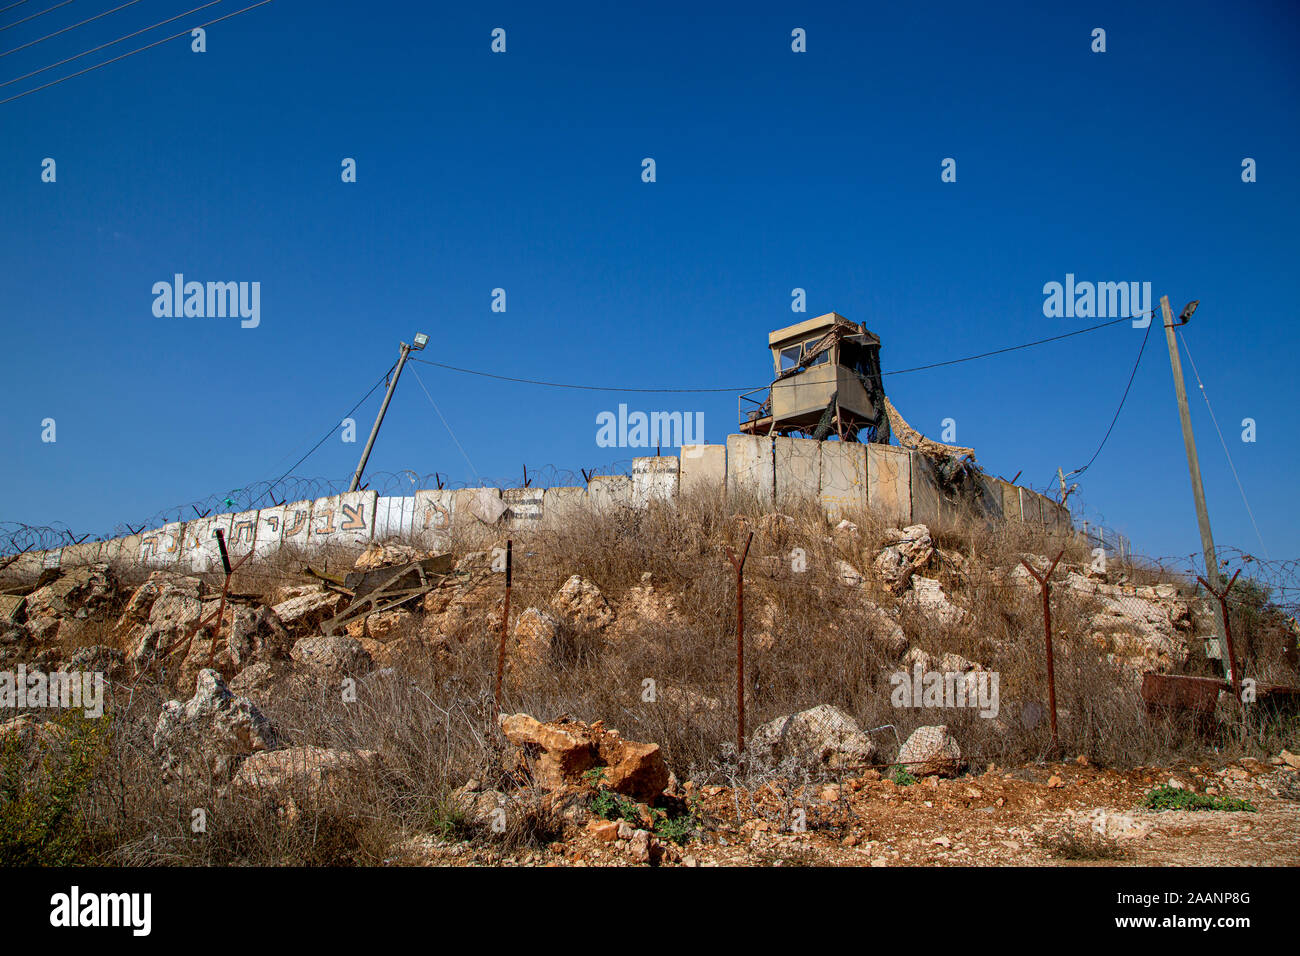 Un militare di torre di avvistamento su un muro di confine che separa gli insediamenti israeliani dalla zona palestinese un territorio. Foto Stock